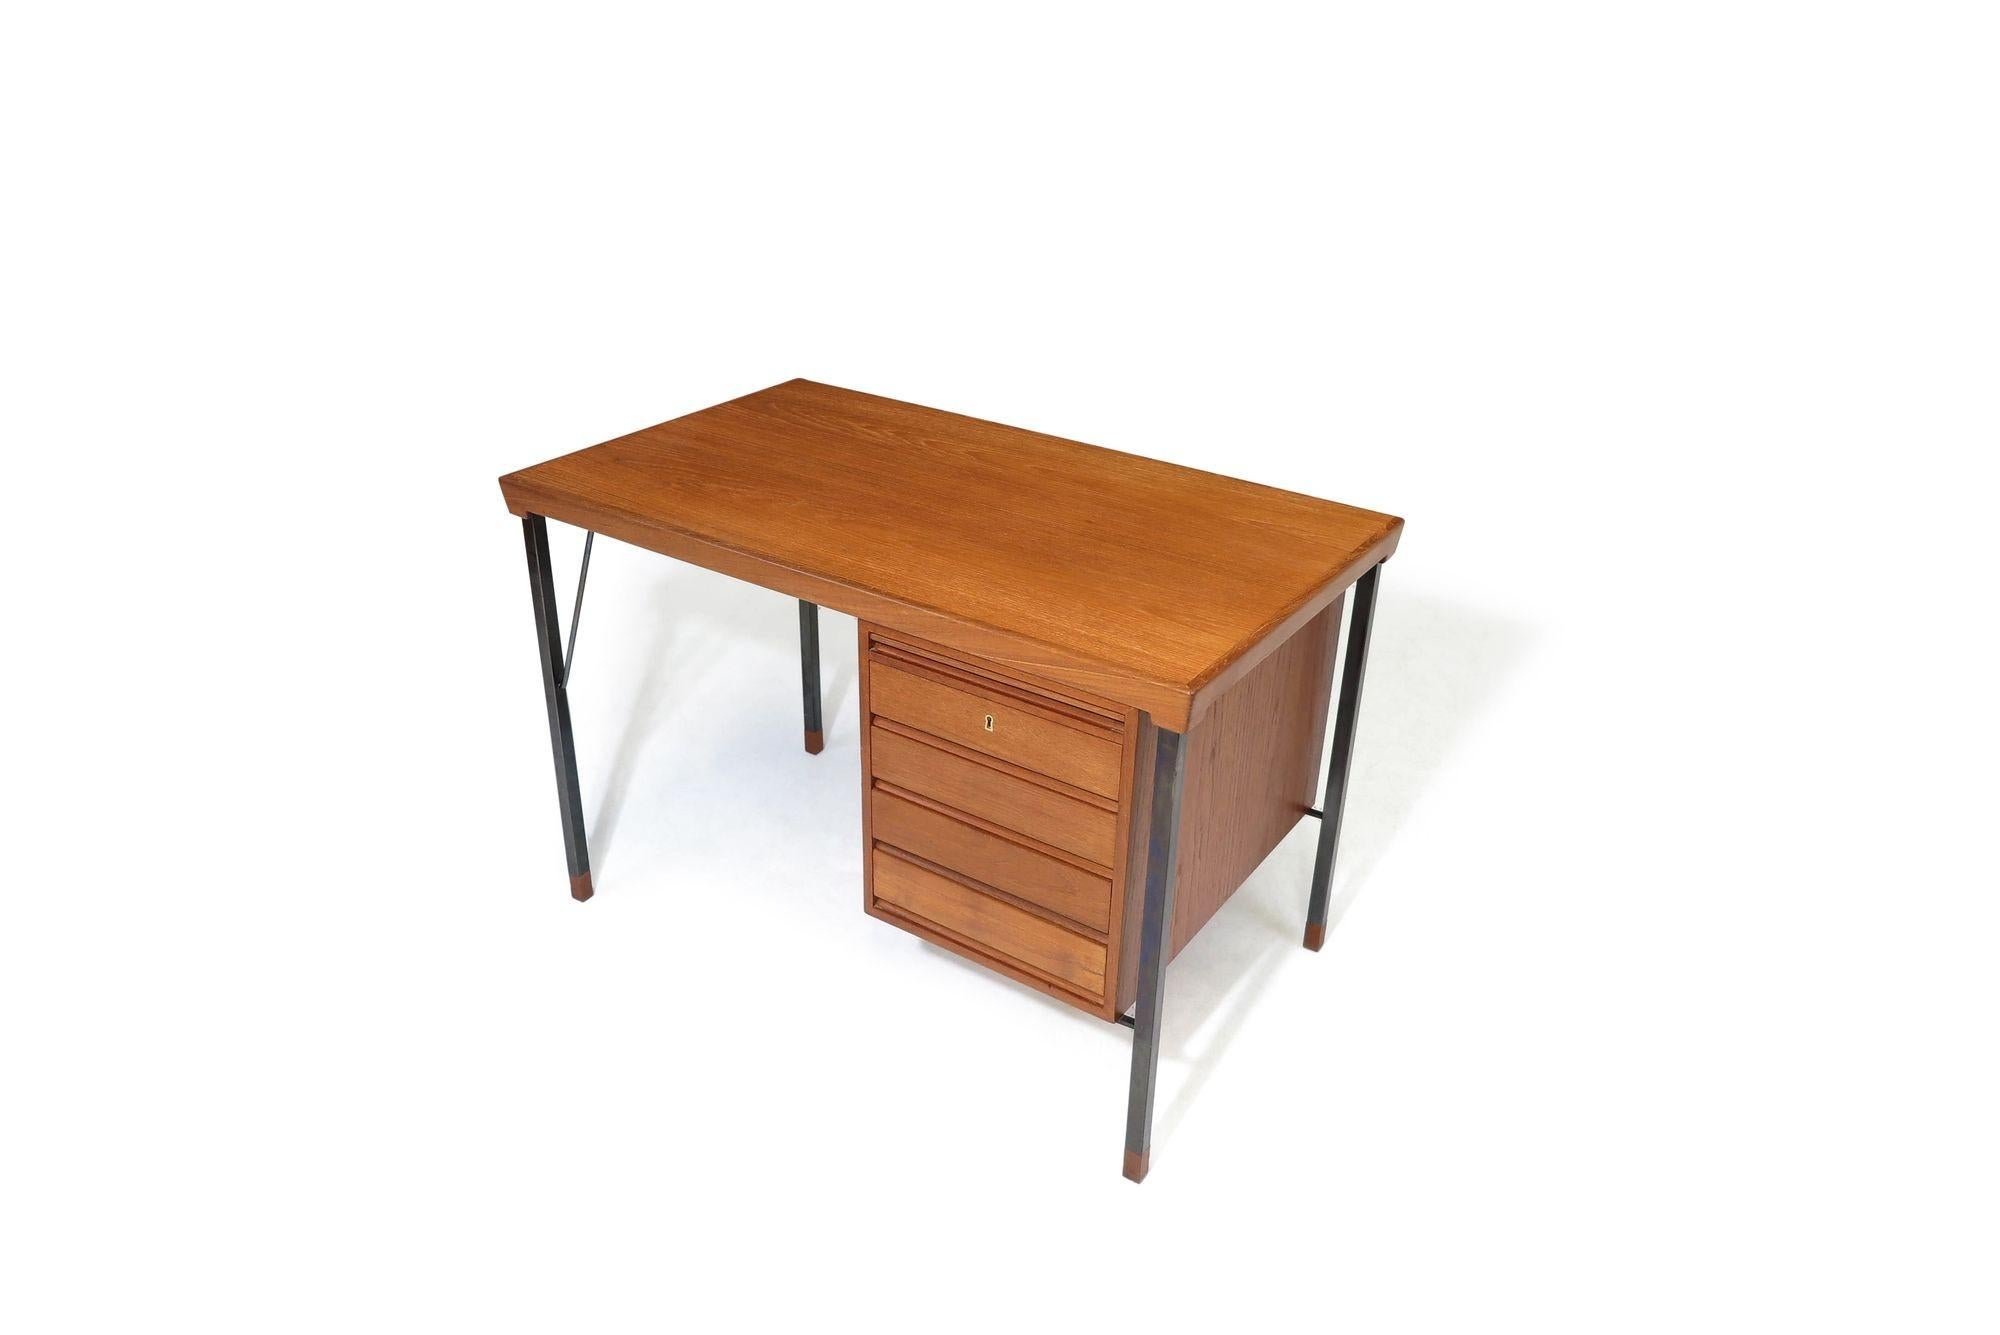 Minimal Danish Designed Teak Desk By Peter Hvidt In Excellent Condition For Sale In Oakland, CA